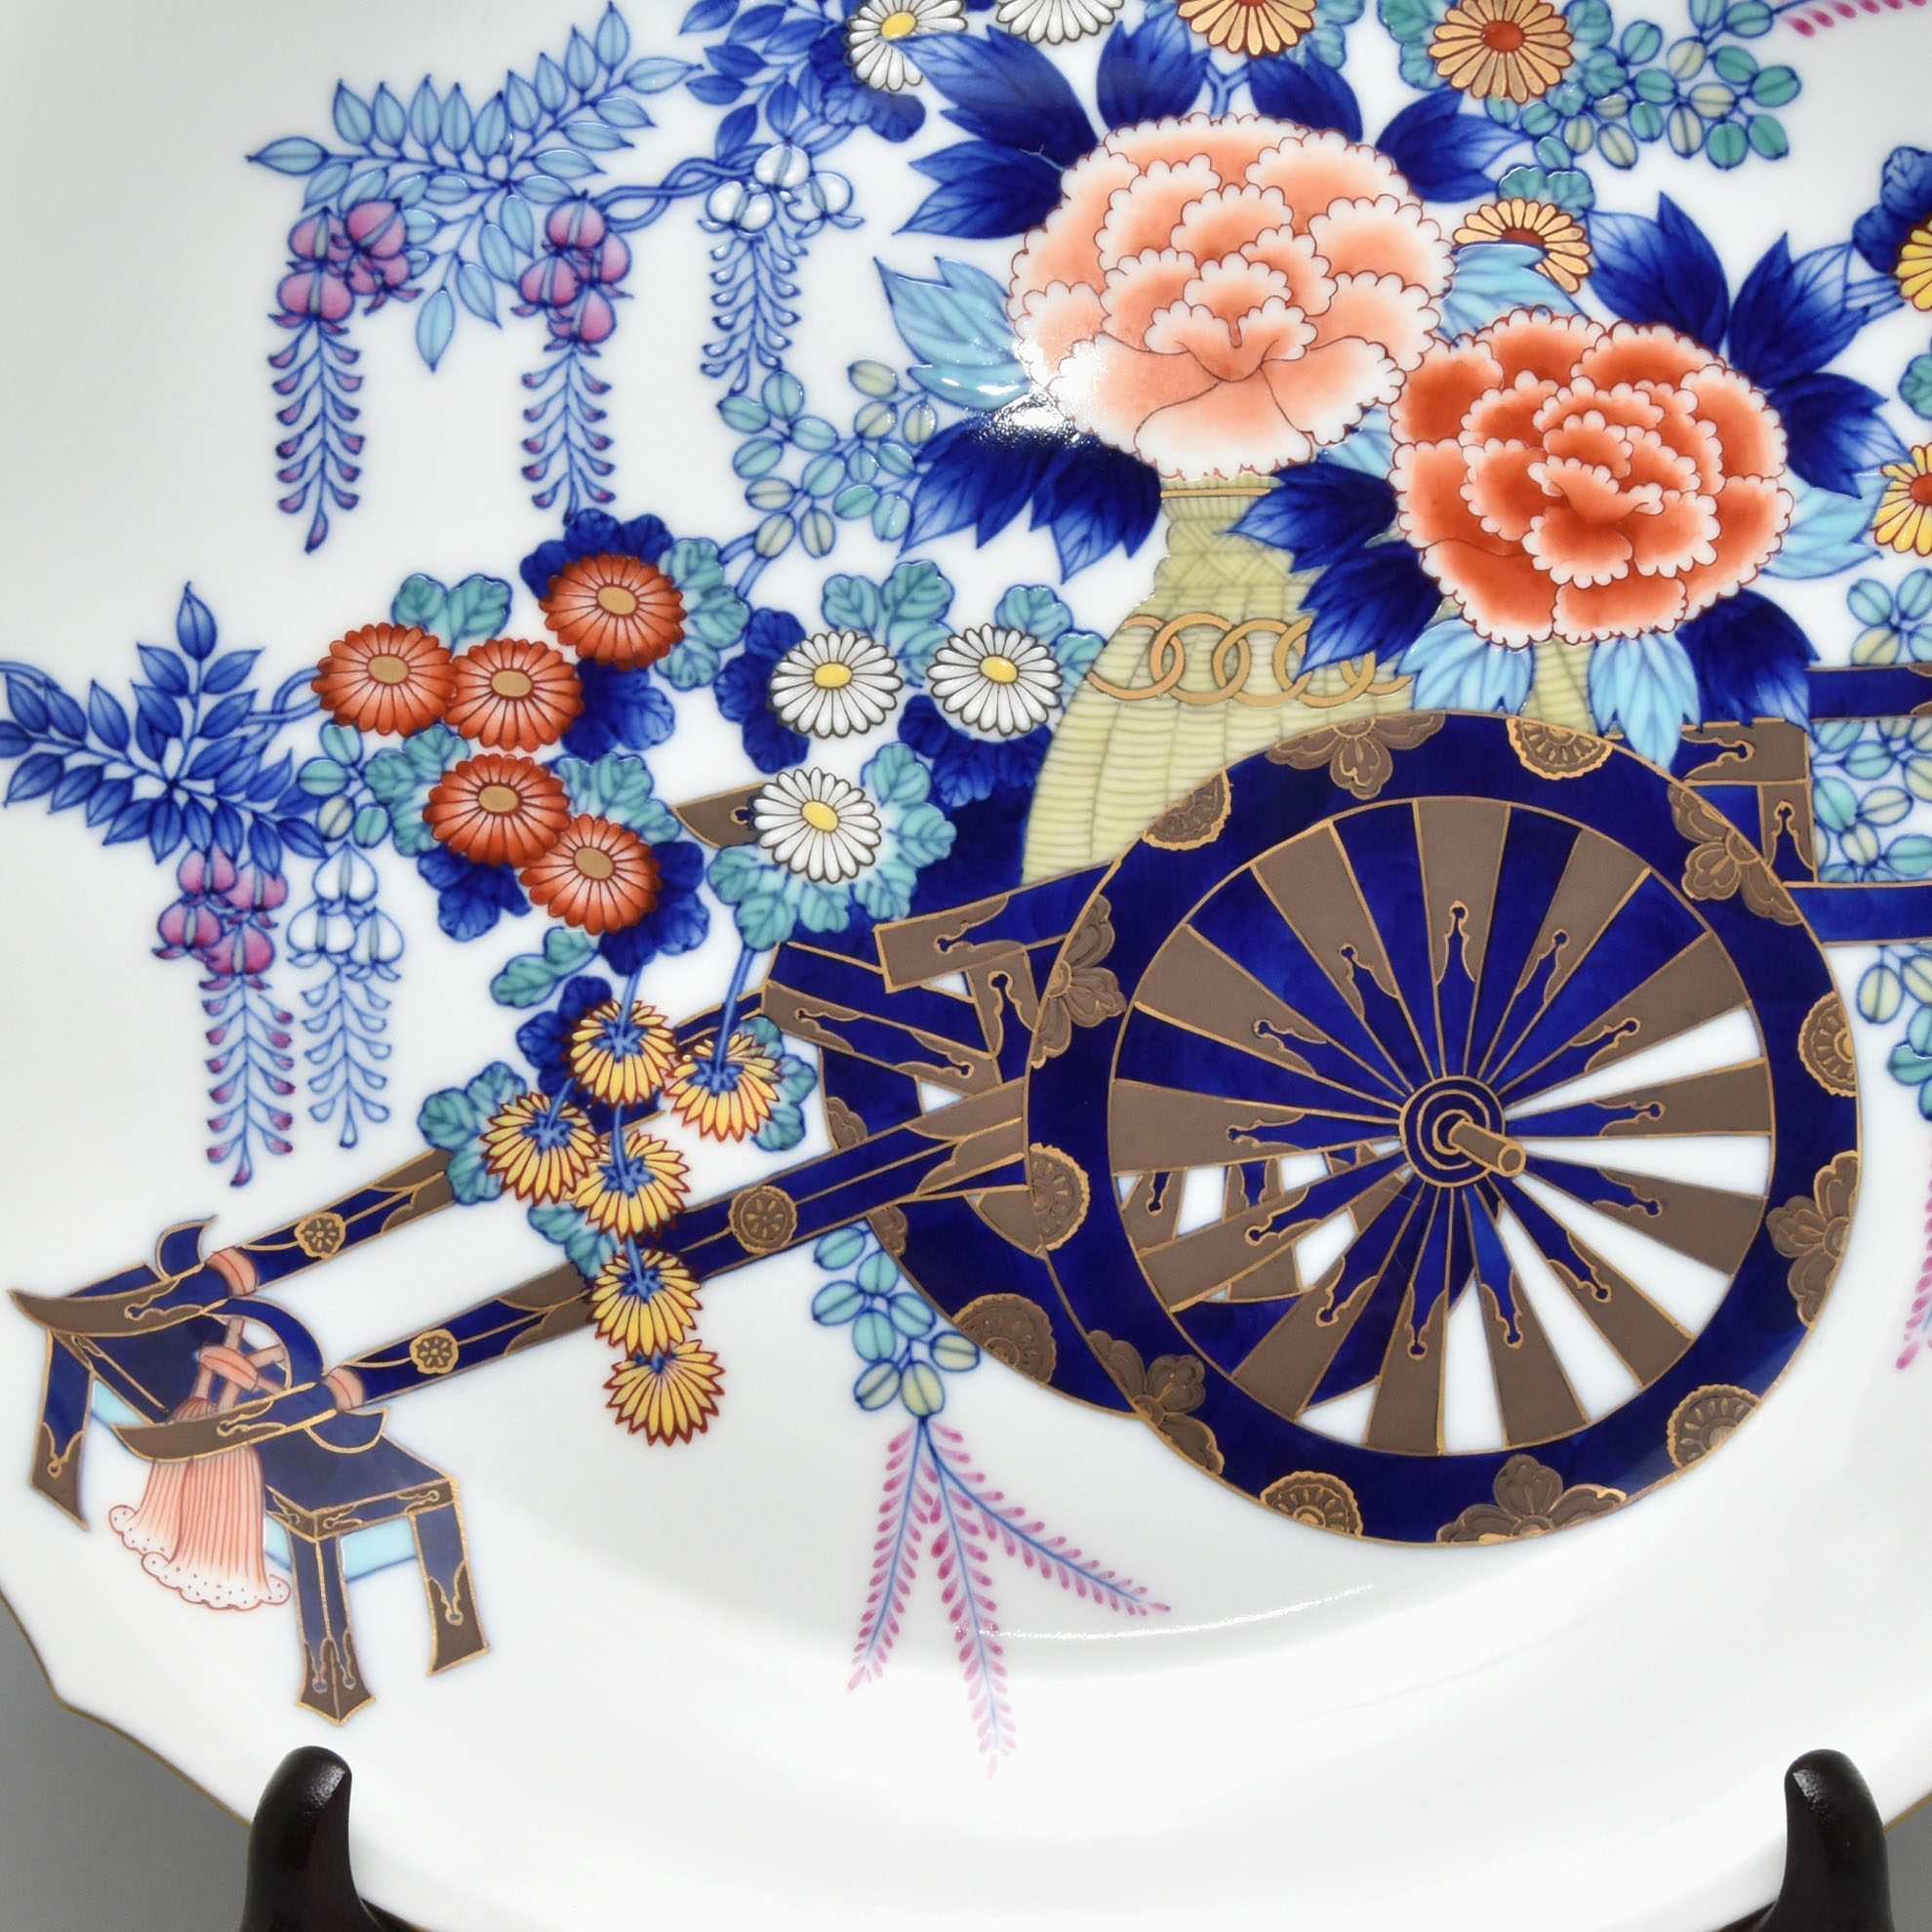 牡丹・菊・藤　季節の花で絢爛豪華に飾った花車を精緻に描いています。